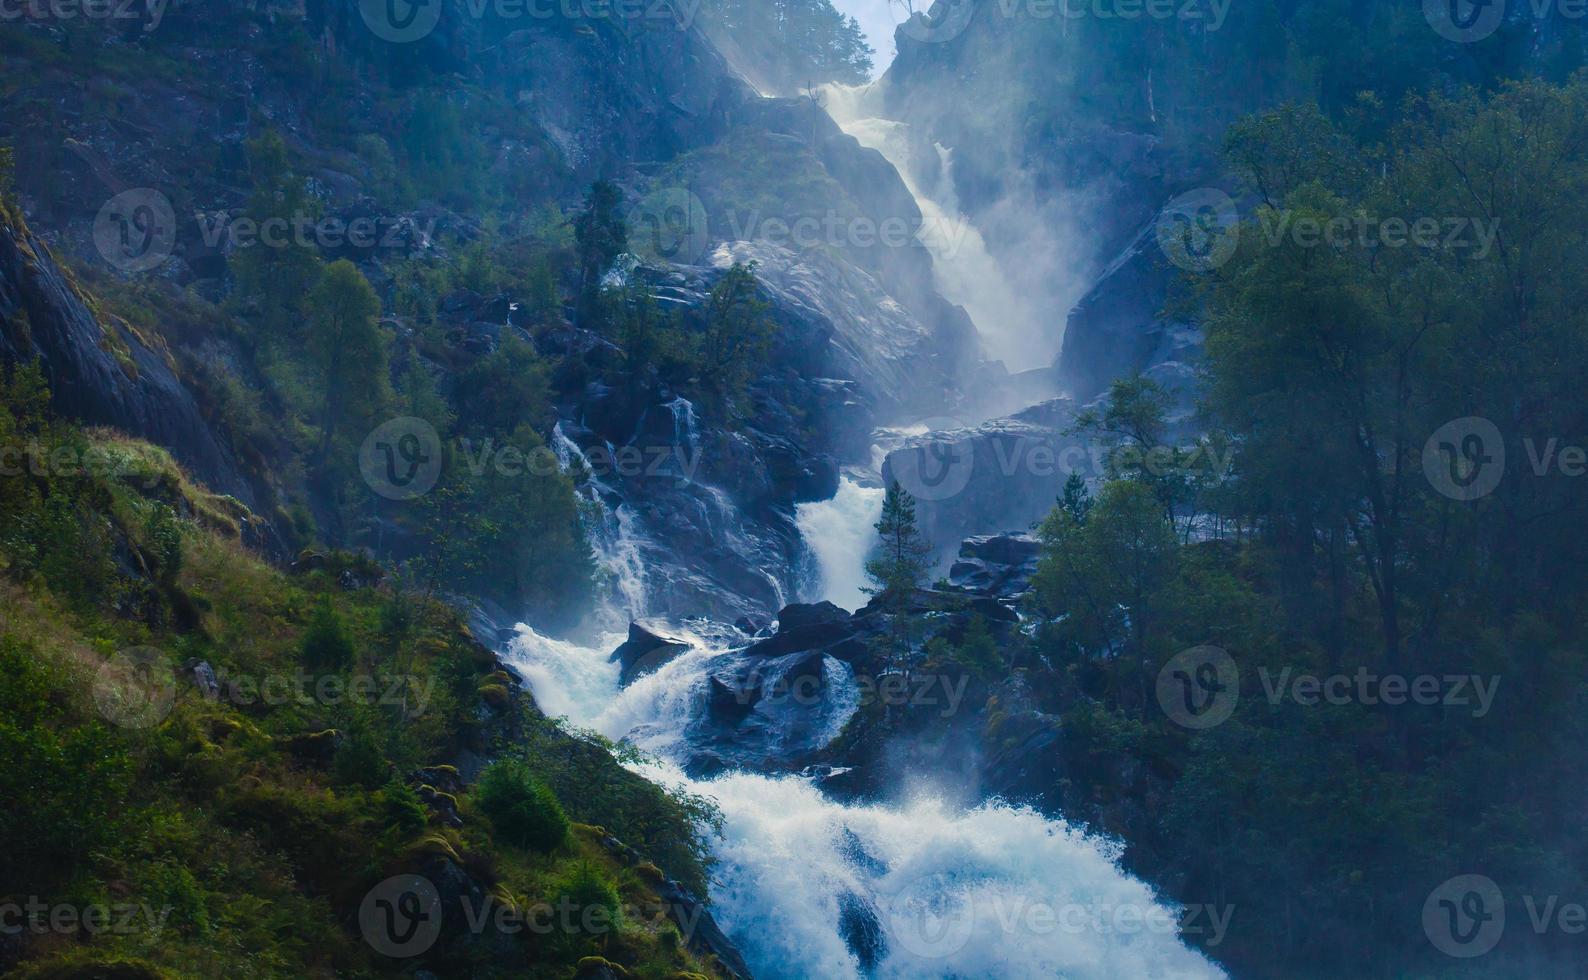 belle photo panoramique dynamique avec vue sur cascade en islande